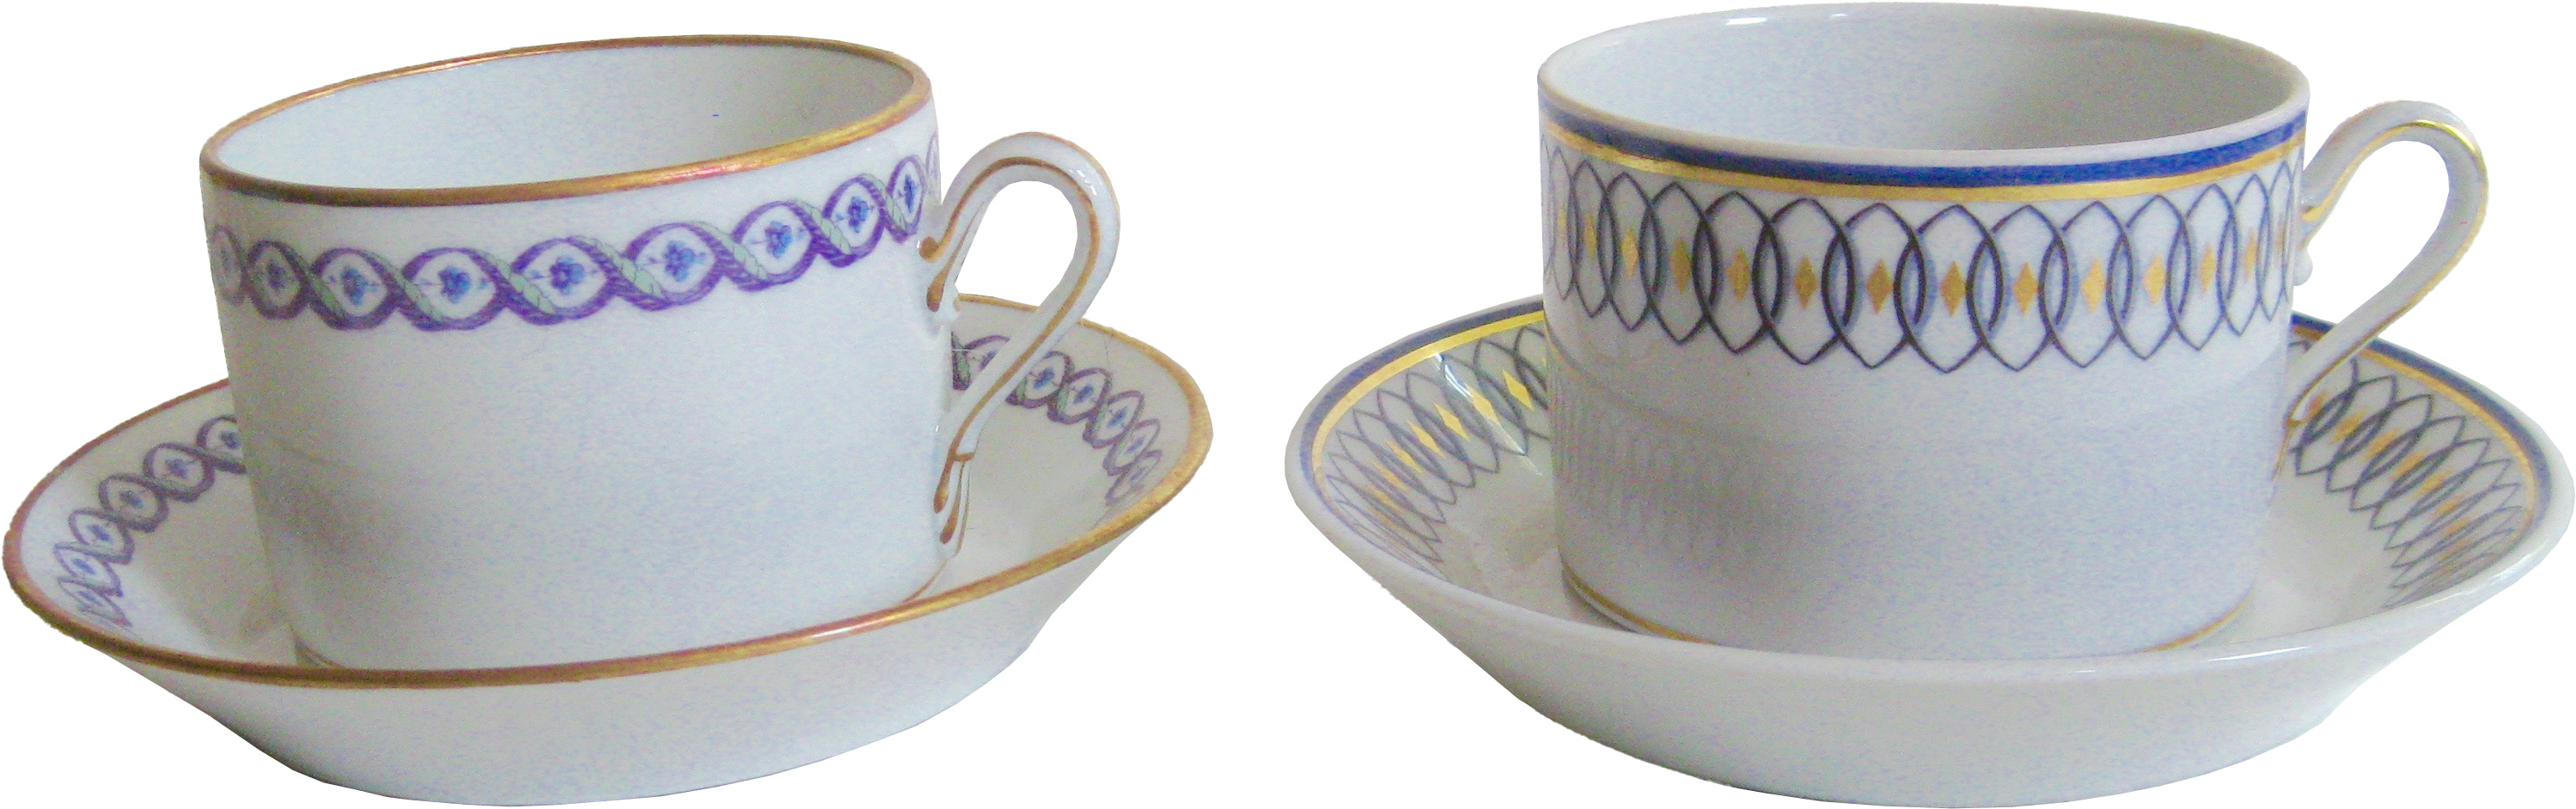 Ginori Italian Porcelain Cups & Saucers~P77344878